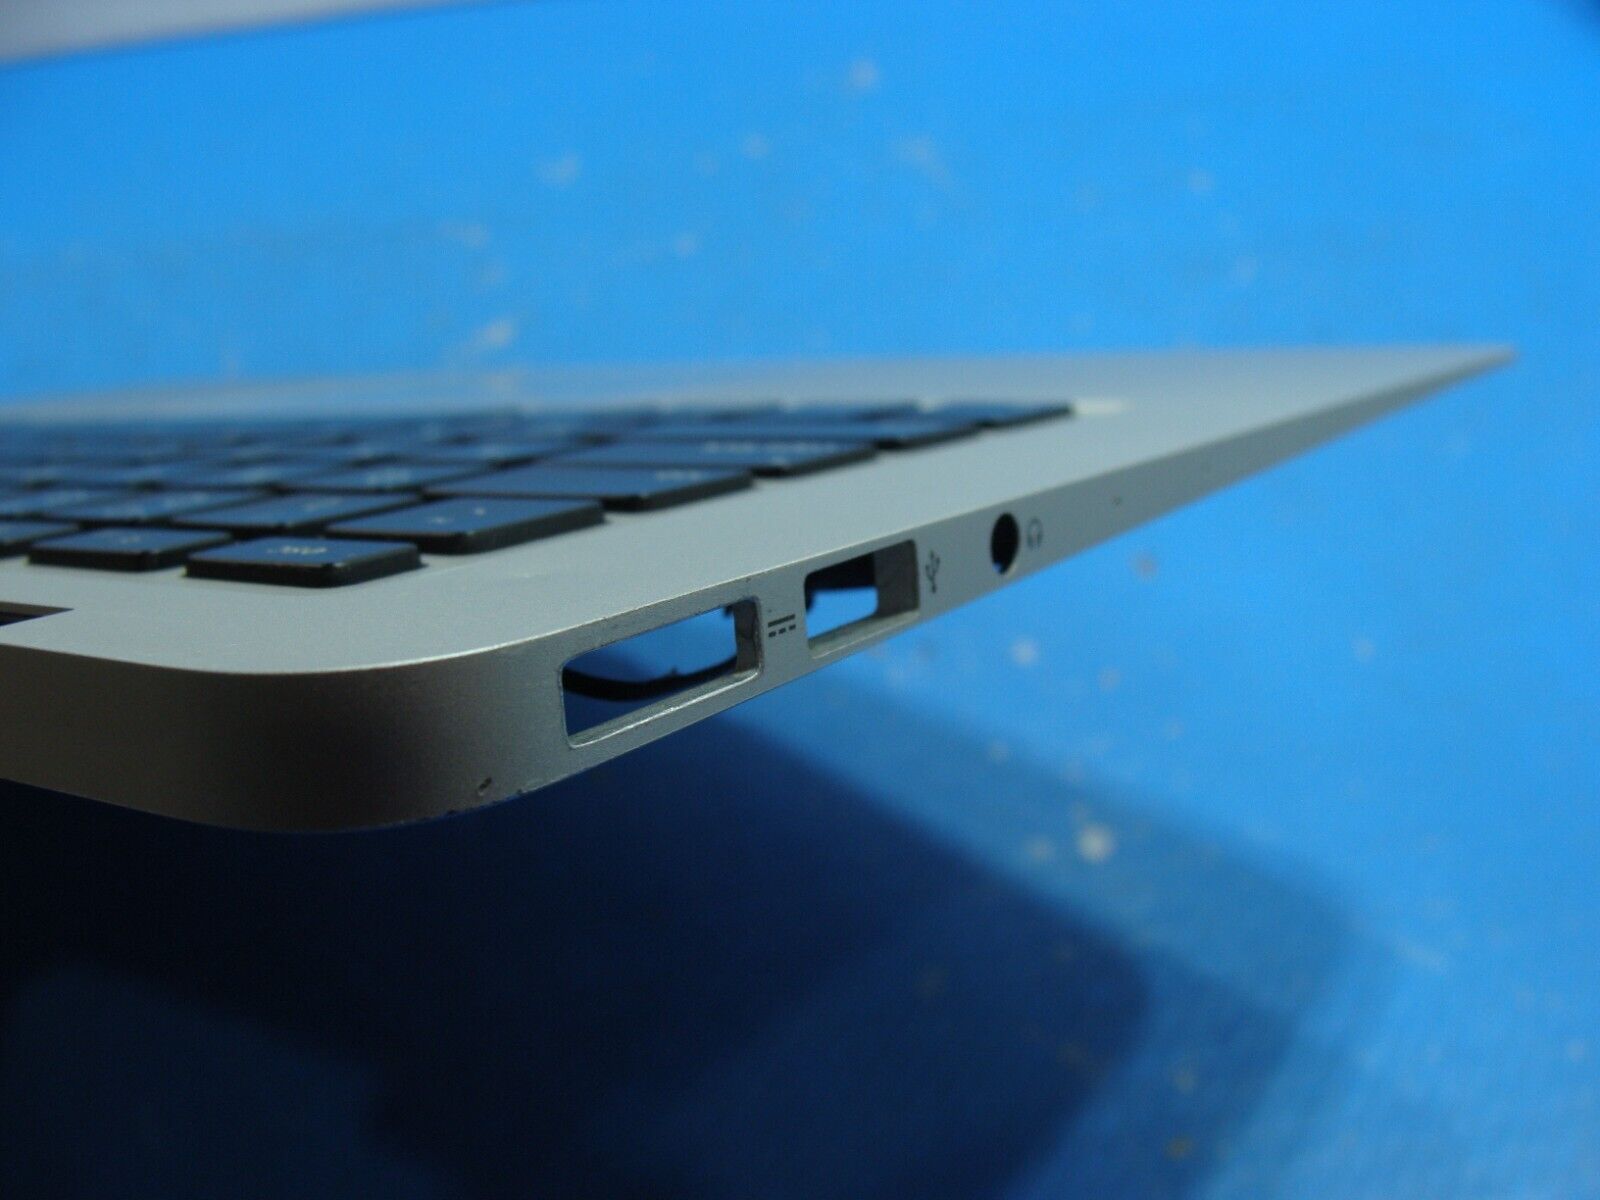 MacBook Air A1466 Early 2015 MJVE2LL/A 13